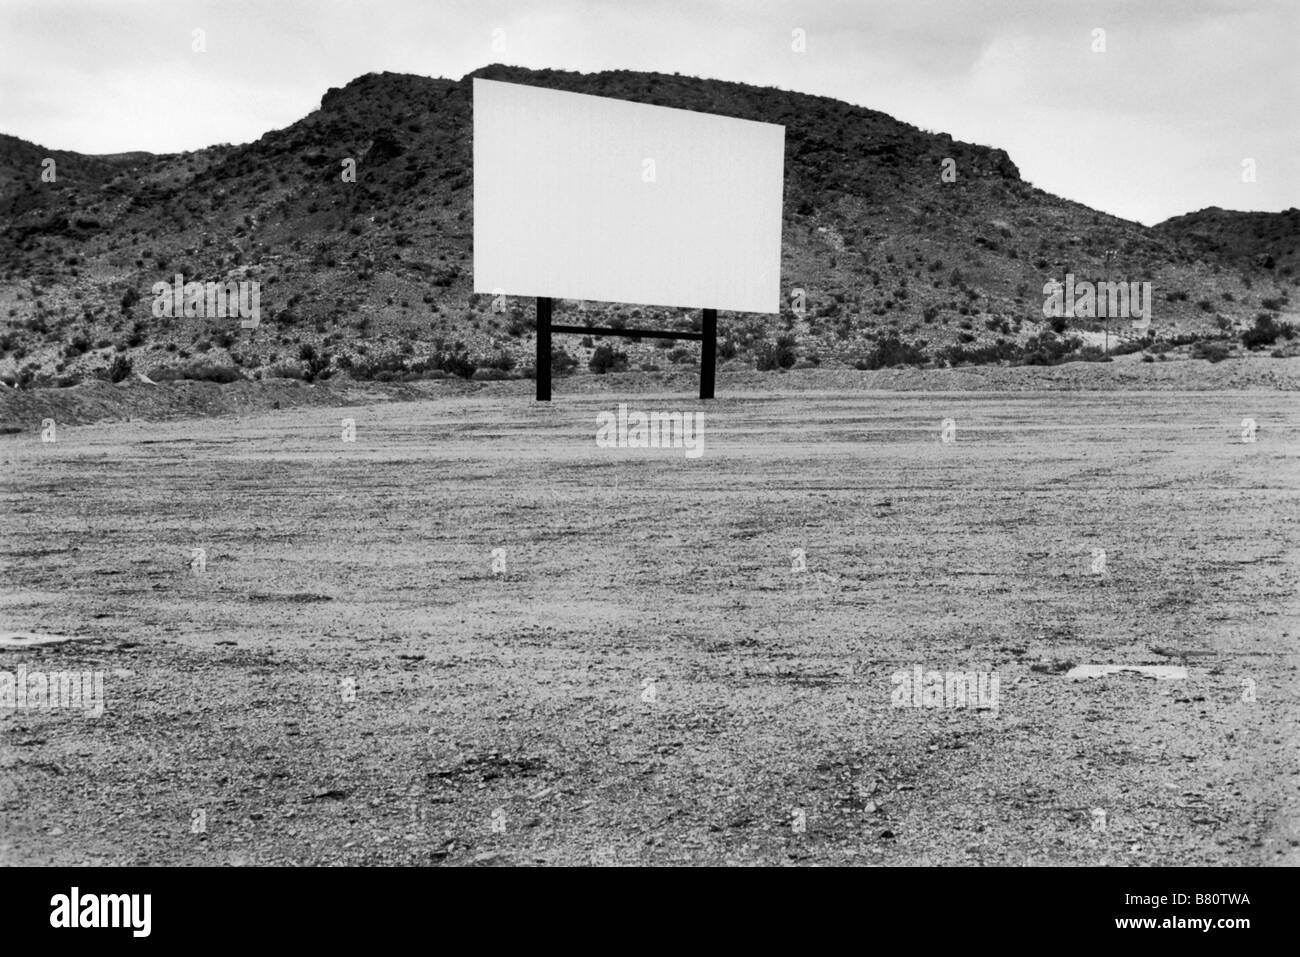 Fahren Sie im Kino, leerer Bildschirm während des Tages Barstow California USA 2000er Jahre US HOMER SYKES Stockfoto